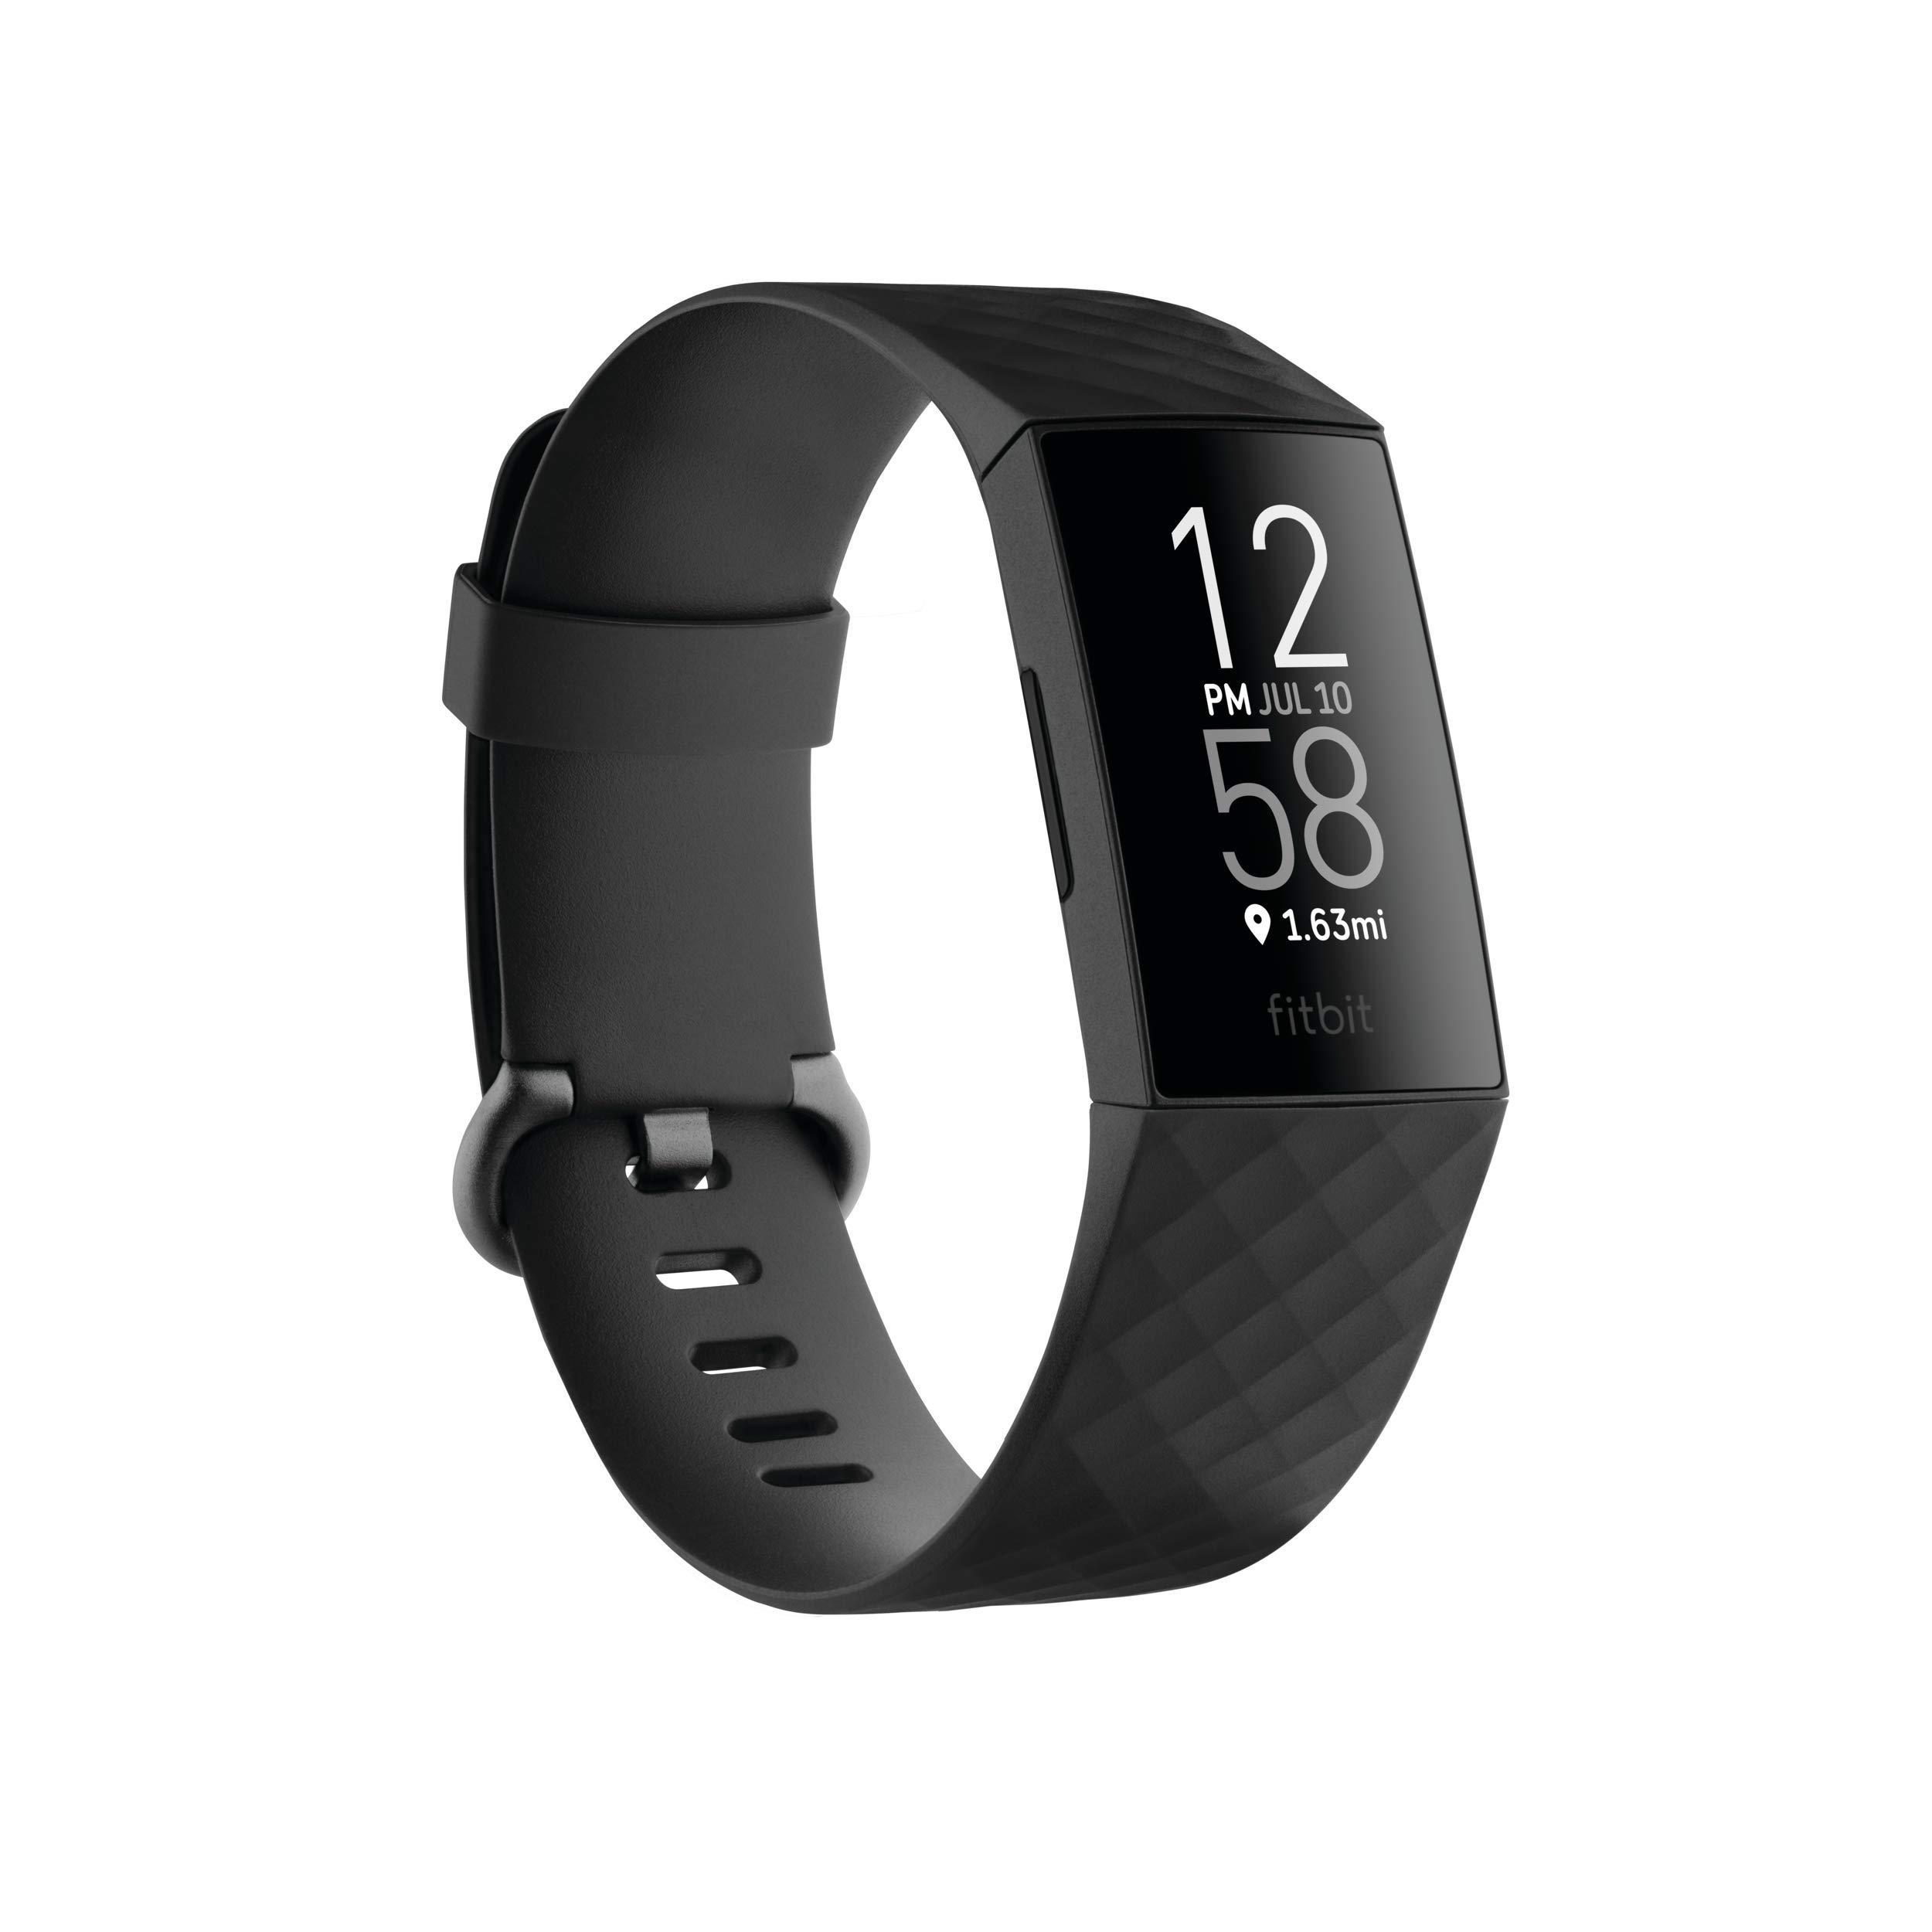 Fitbit متتبع Charge 4 للياقة البدنية والنشاط مع GPS مدمج ومعدل ضربات القلب وتتبع النوم والسباحة